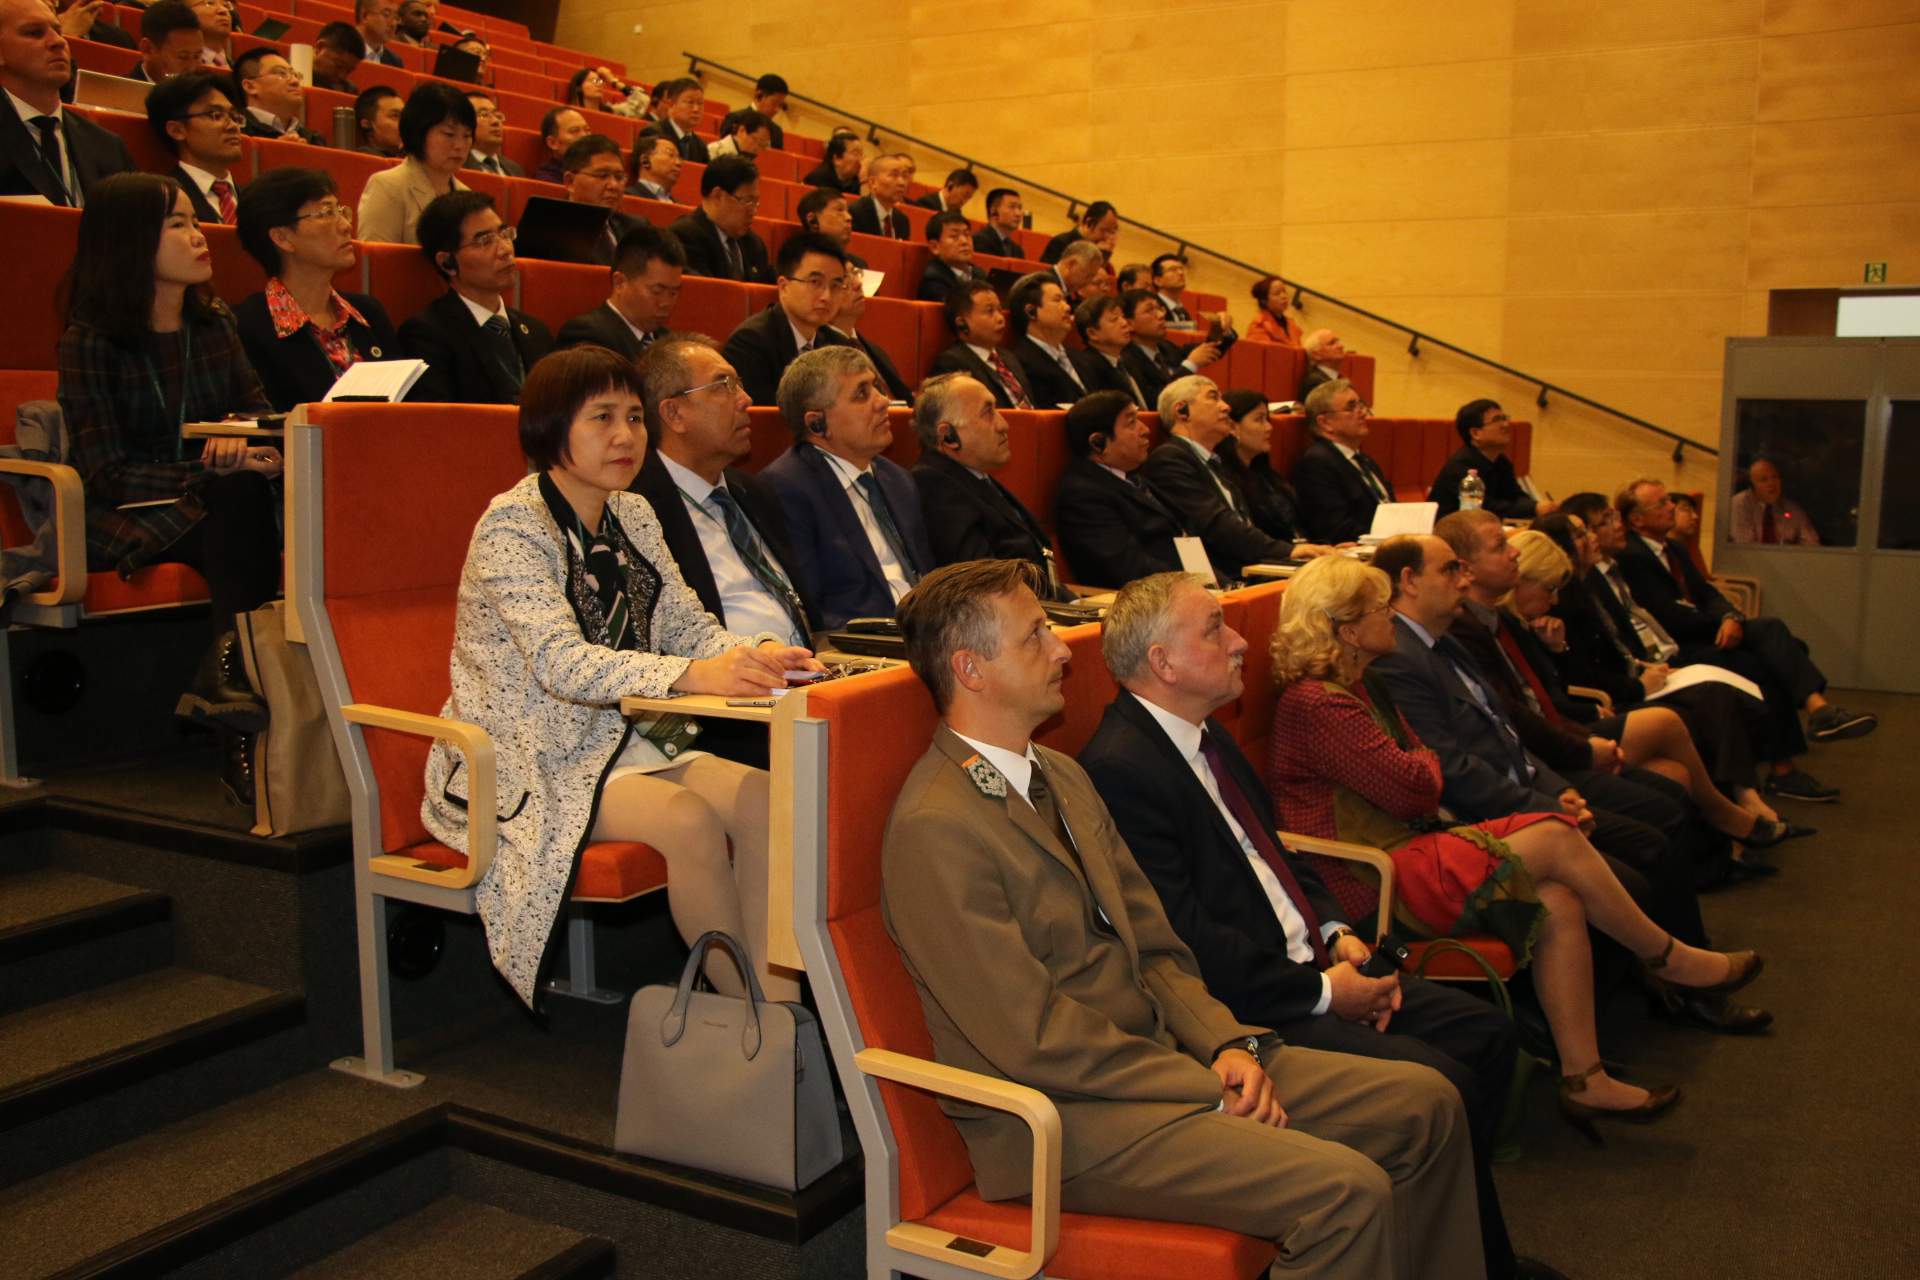 Na Uniwersytecie Przyrodniczym w Poznaniu trwa międzynarodowa konferencja połączona z IV Forum w ramach SAERIA, podczas którego spotykają się naukowcy największych uczelni rolniczych z Chin oraz wielu innych krajów położonych wzdłuż Jedwabnego szlaku.